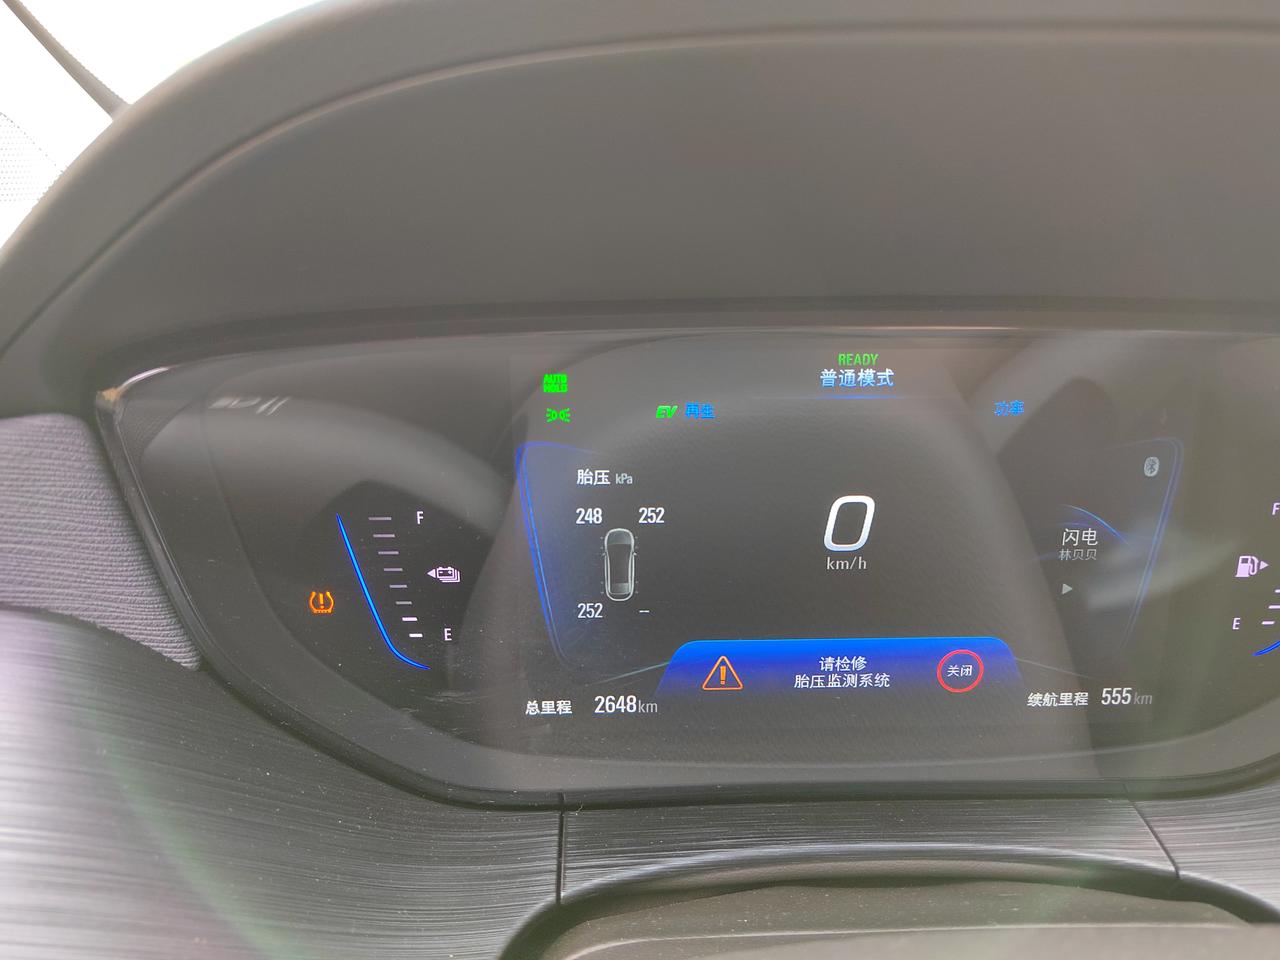 别克微蓝6 PHEV 微蓝6Phev装wifi版本行车记录仪后显示检修胎压监测系统，怎么办，选择什么行车记录仪才会避免